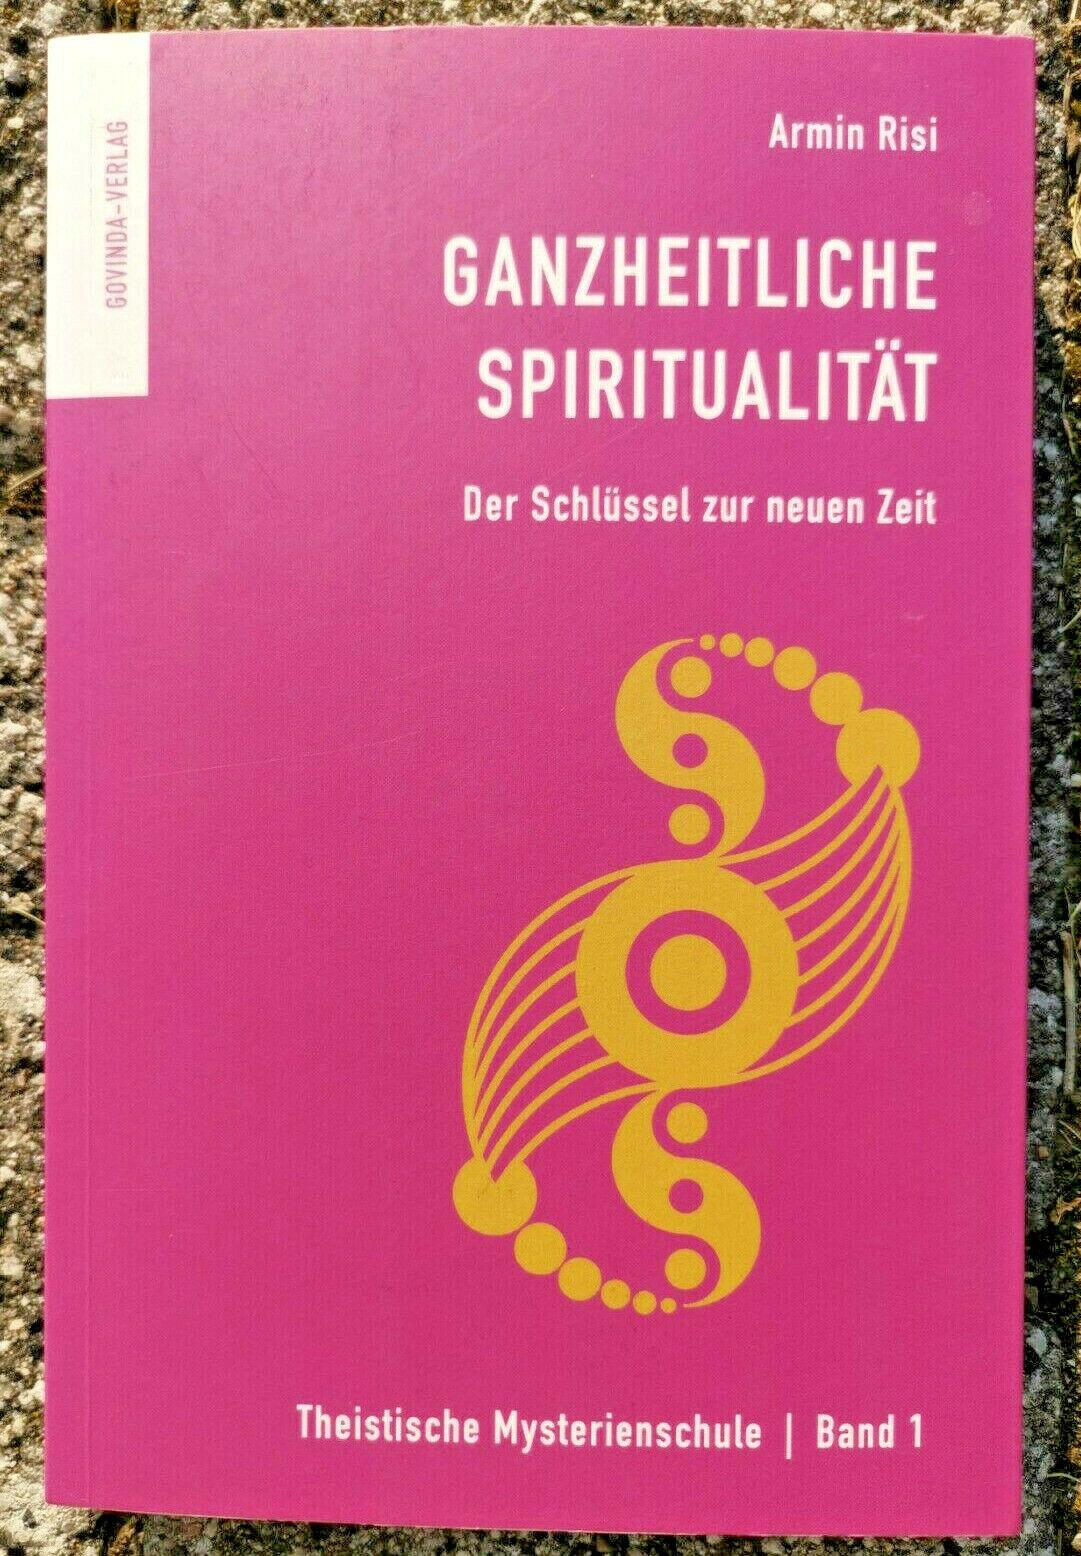 Ganzheitliche Spiritualitat: Der Schlussel zur neuen Zeit (2014) Armin Risi